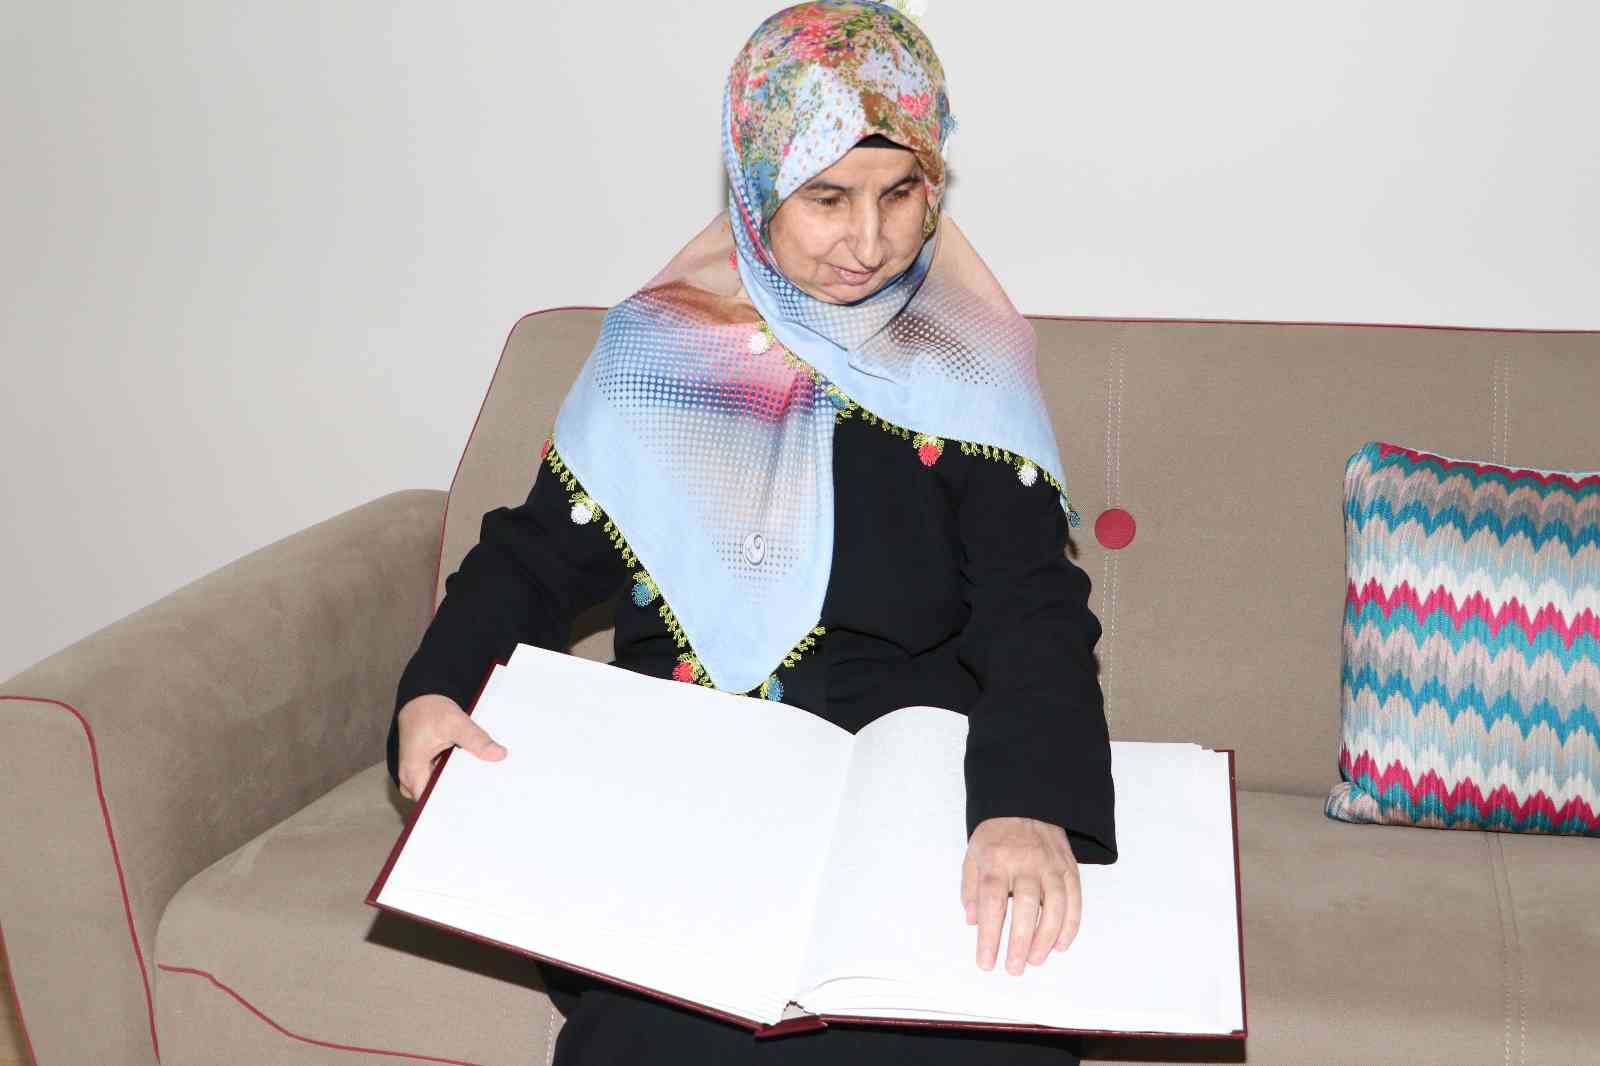 Diyarbakır’da doğuştan görme engelli kadının örnek yaşam çabası ve azmi #diyarbakir